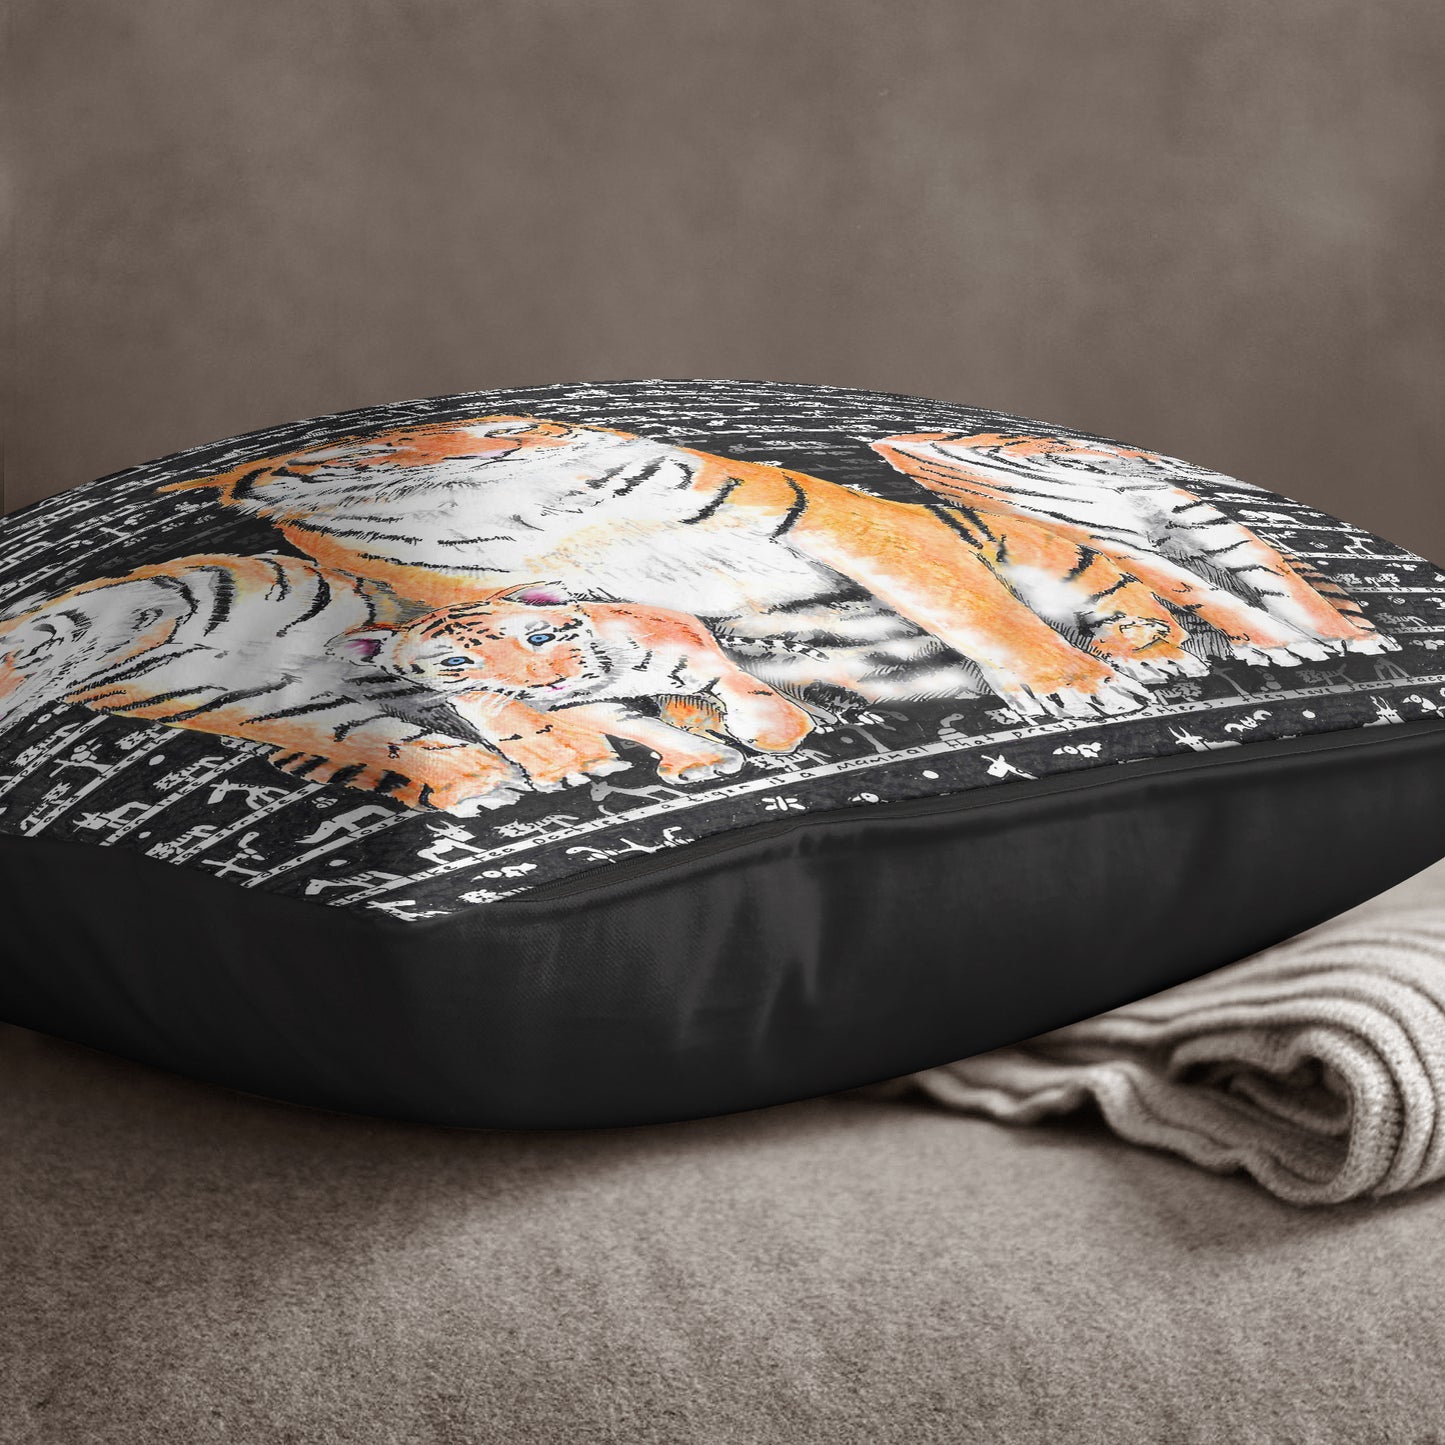 Tiger Cushion - The Tiny Art Co